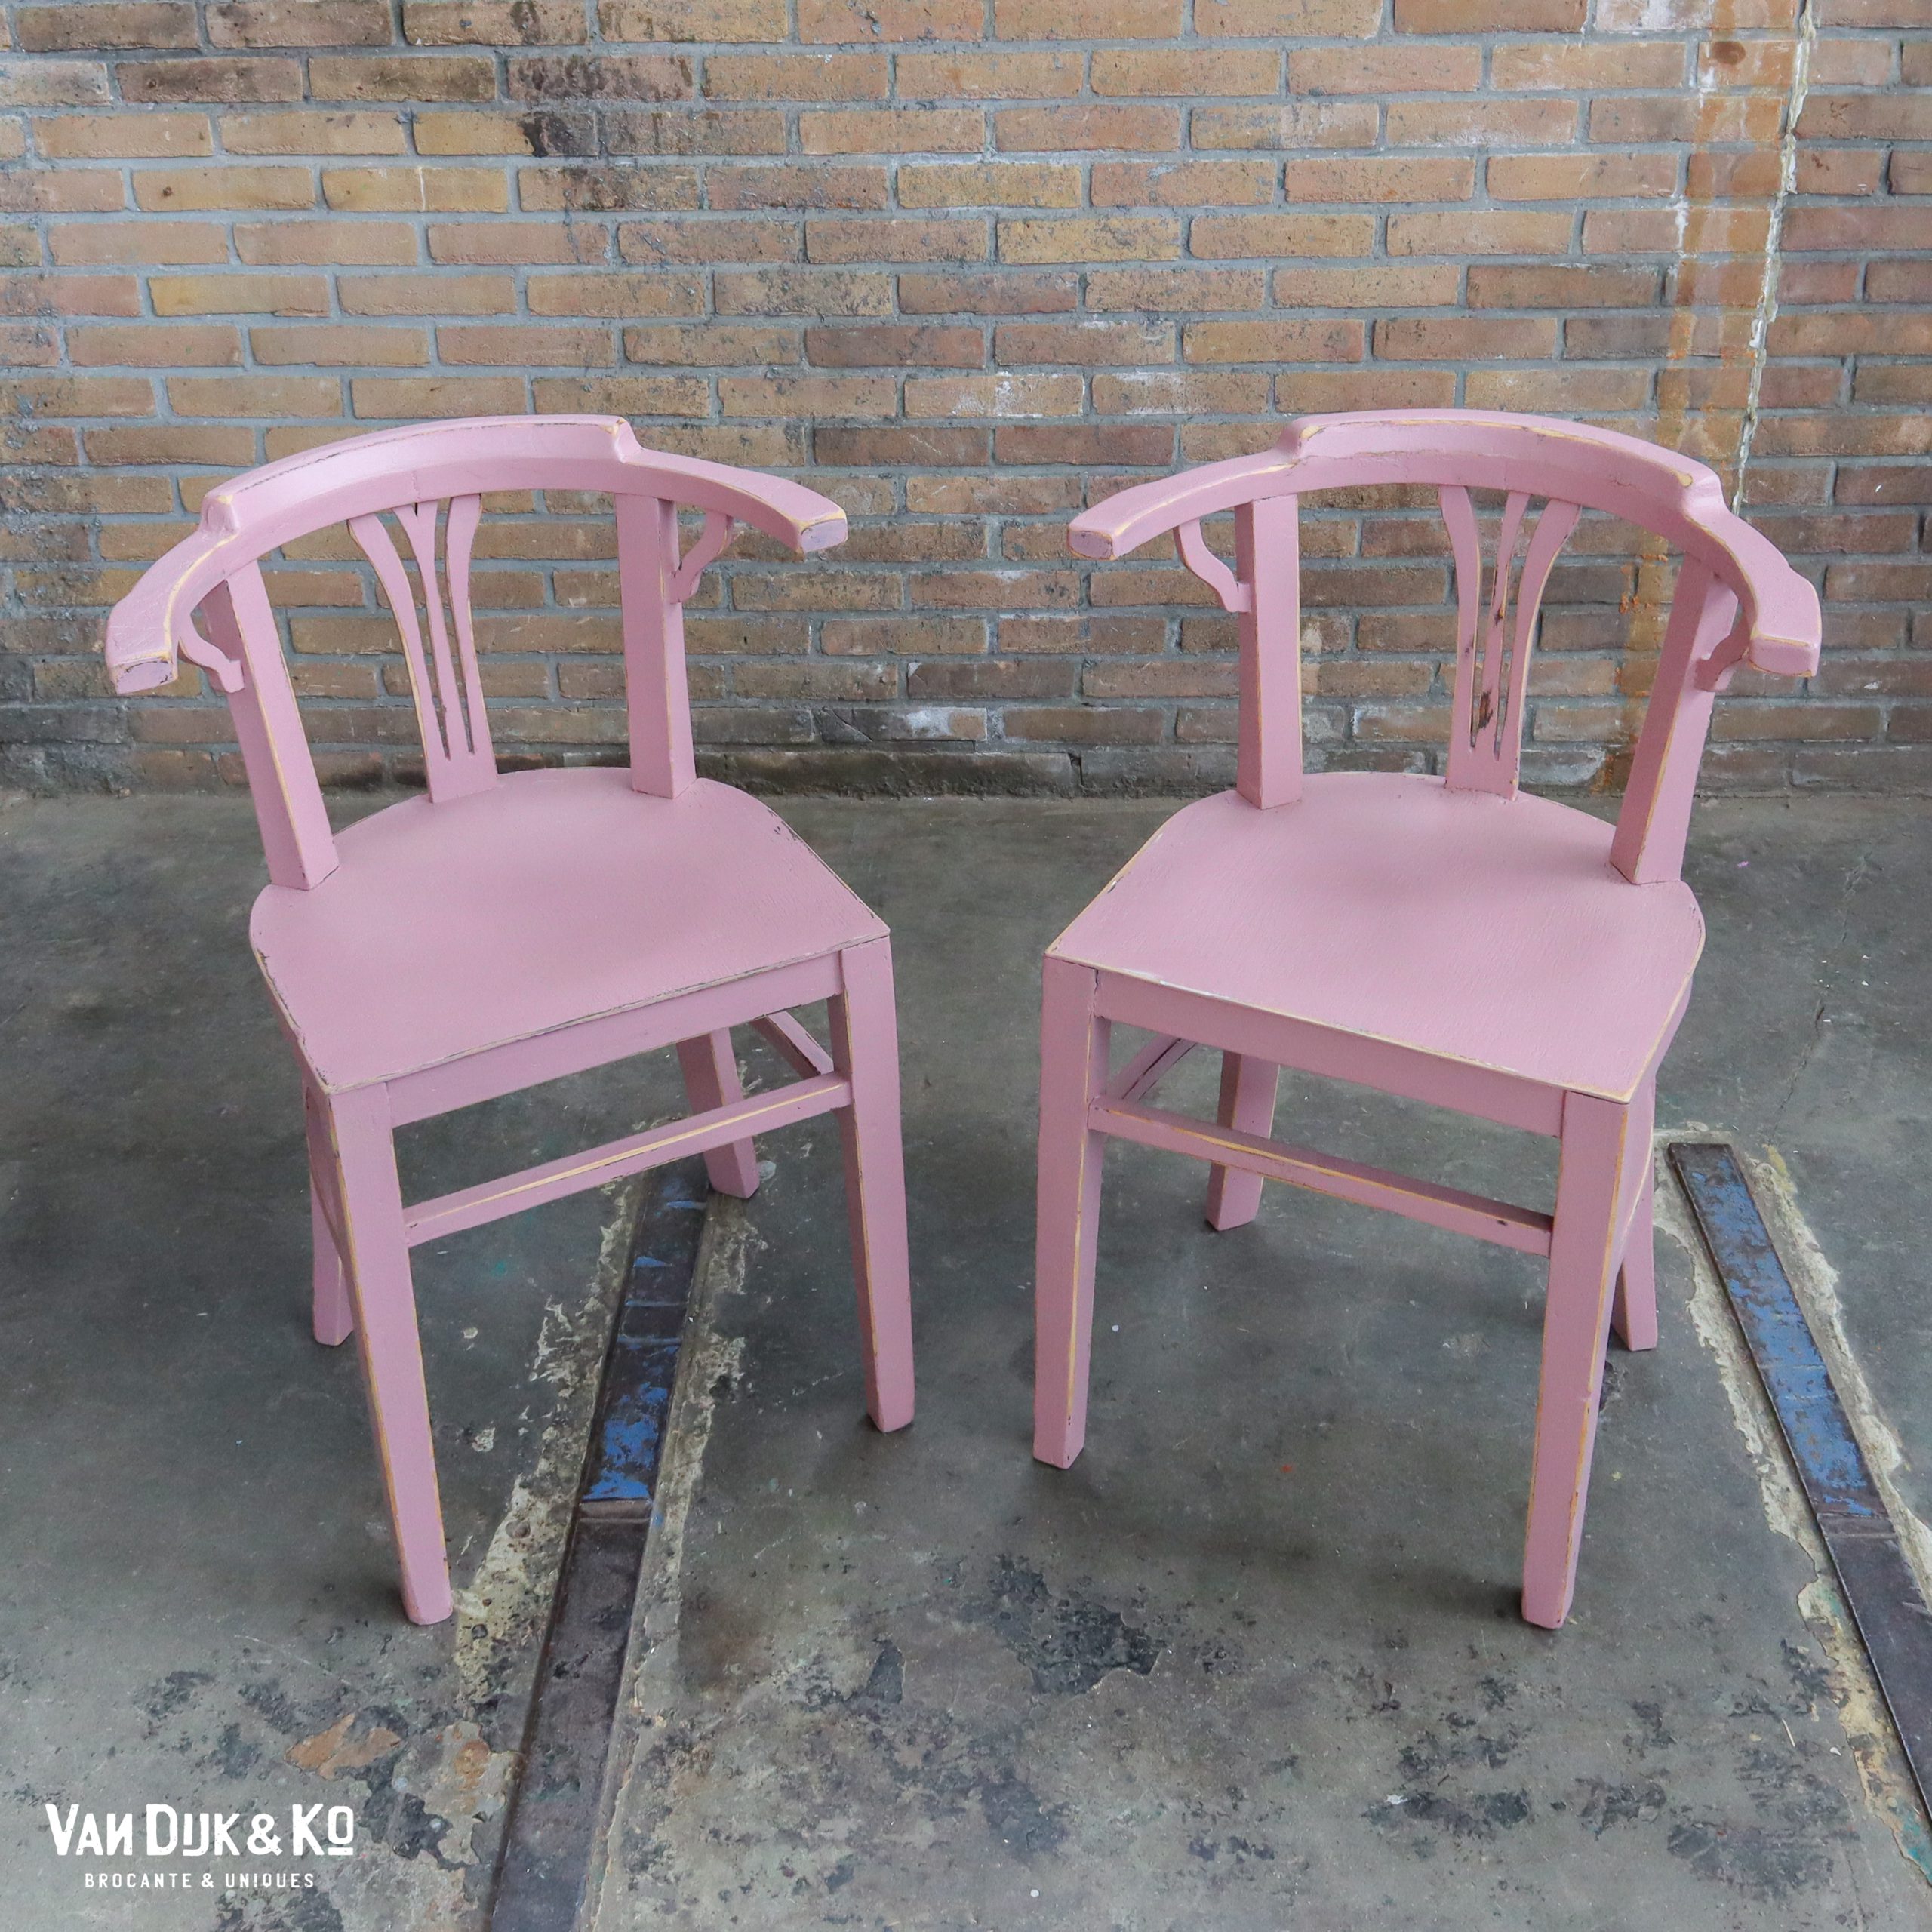 in verlegenheid gebracht Bestrooi voor mij Brocante roze stoelen » Van Dijk & Ko